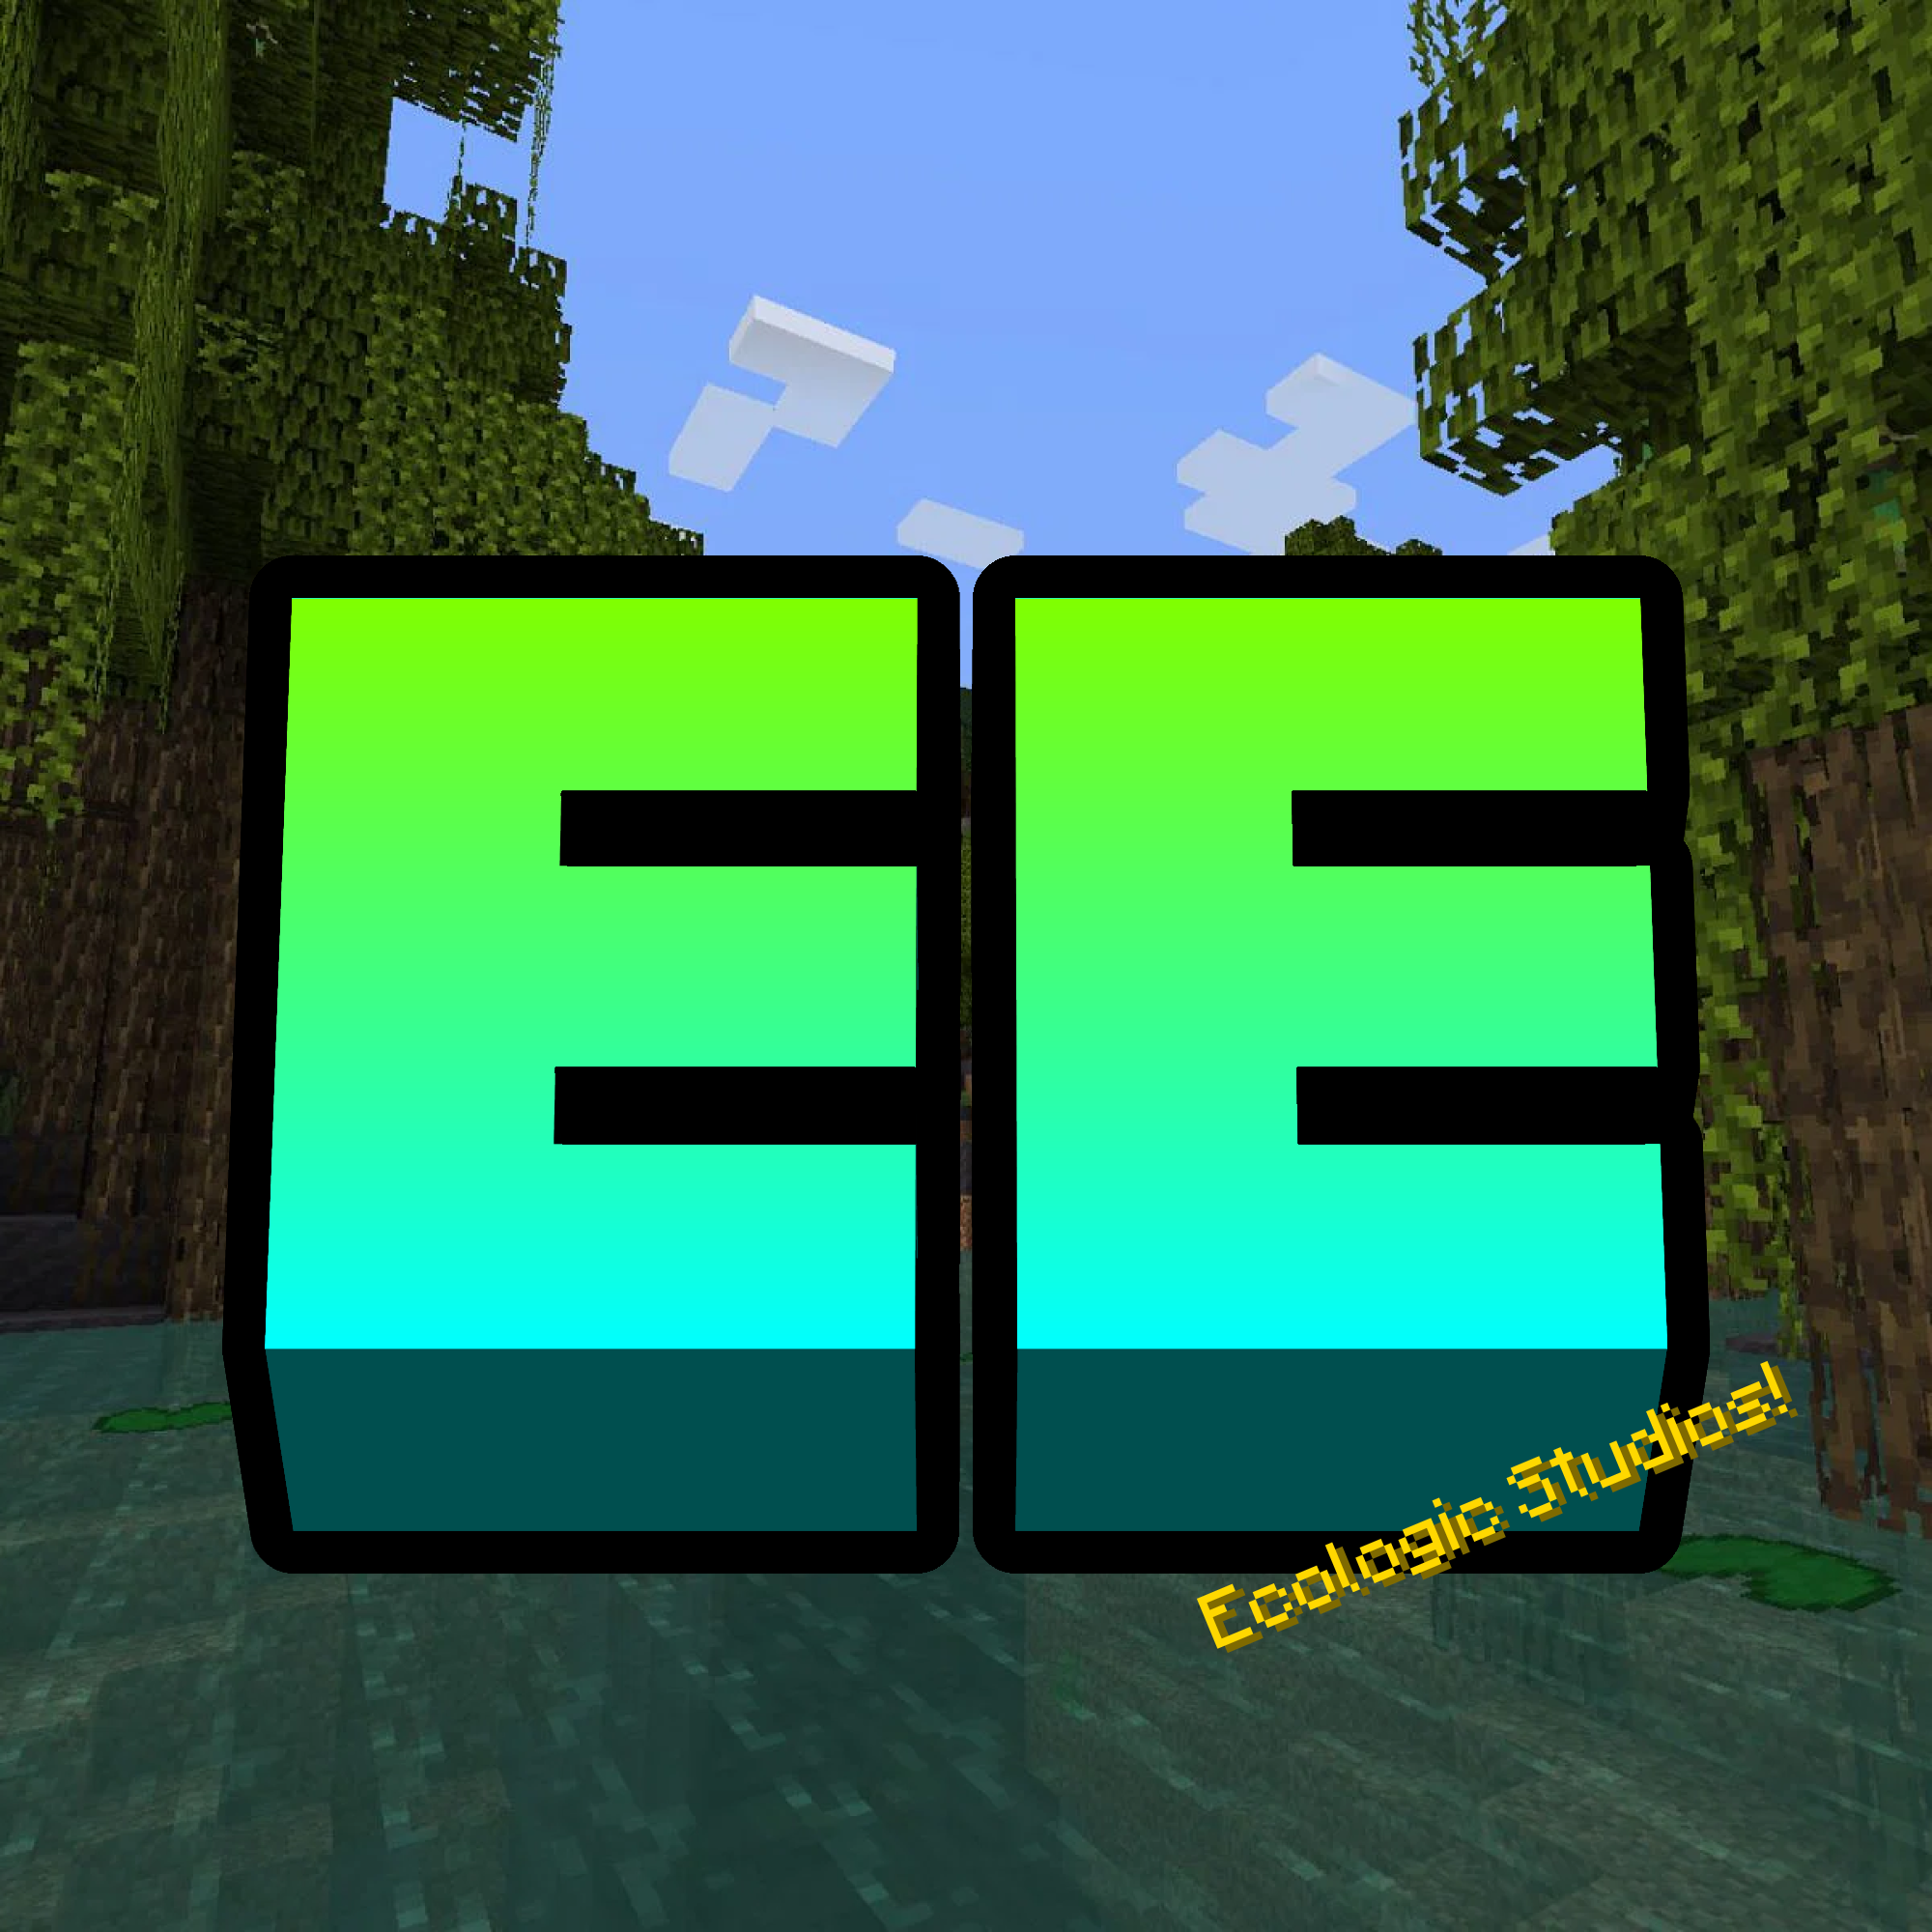 Ecologics - Minecraft Mods - CurseForge